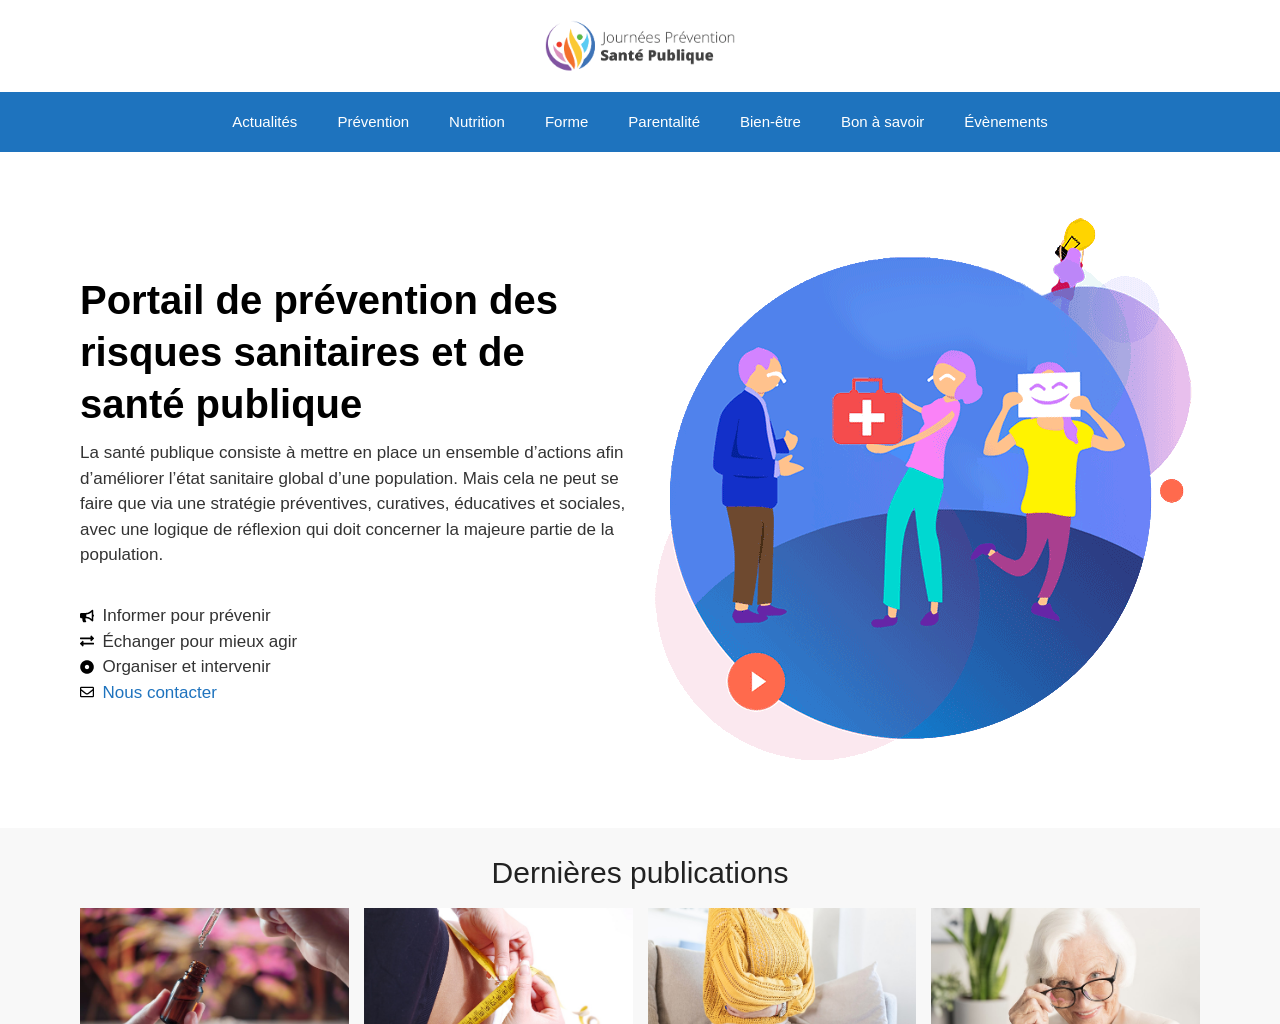 journees-prevention-santepublique.fr